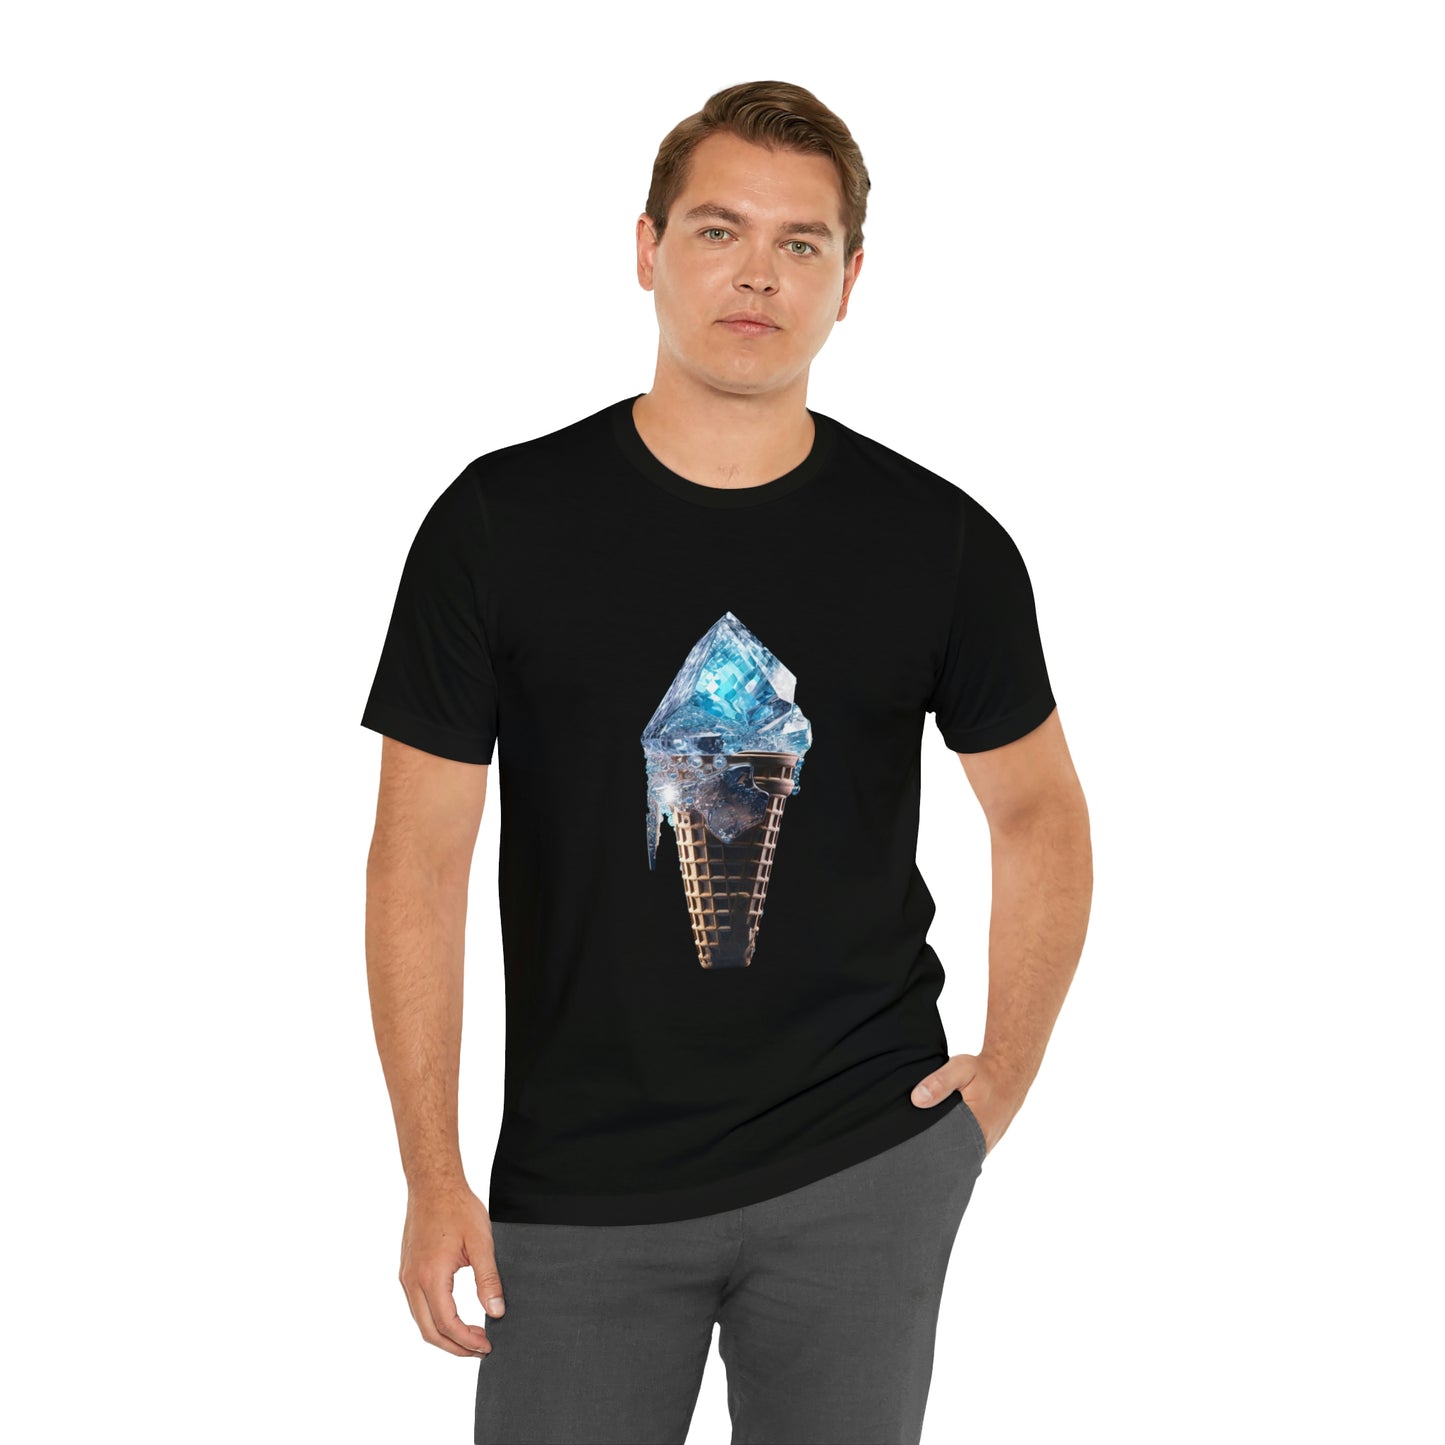 "Diamond Cone" Graphic Tee